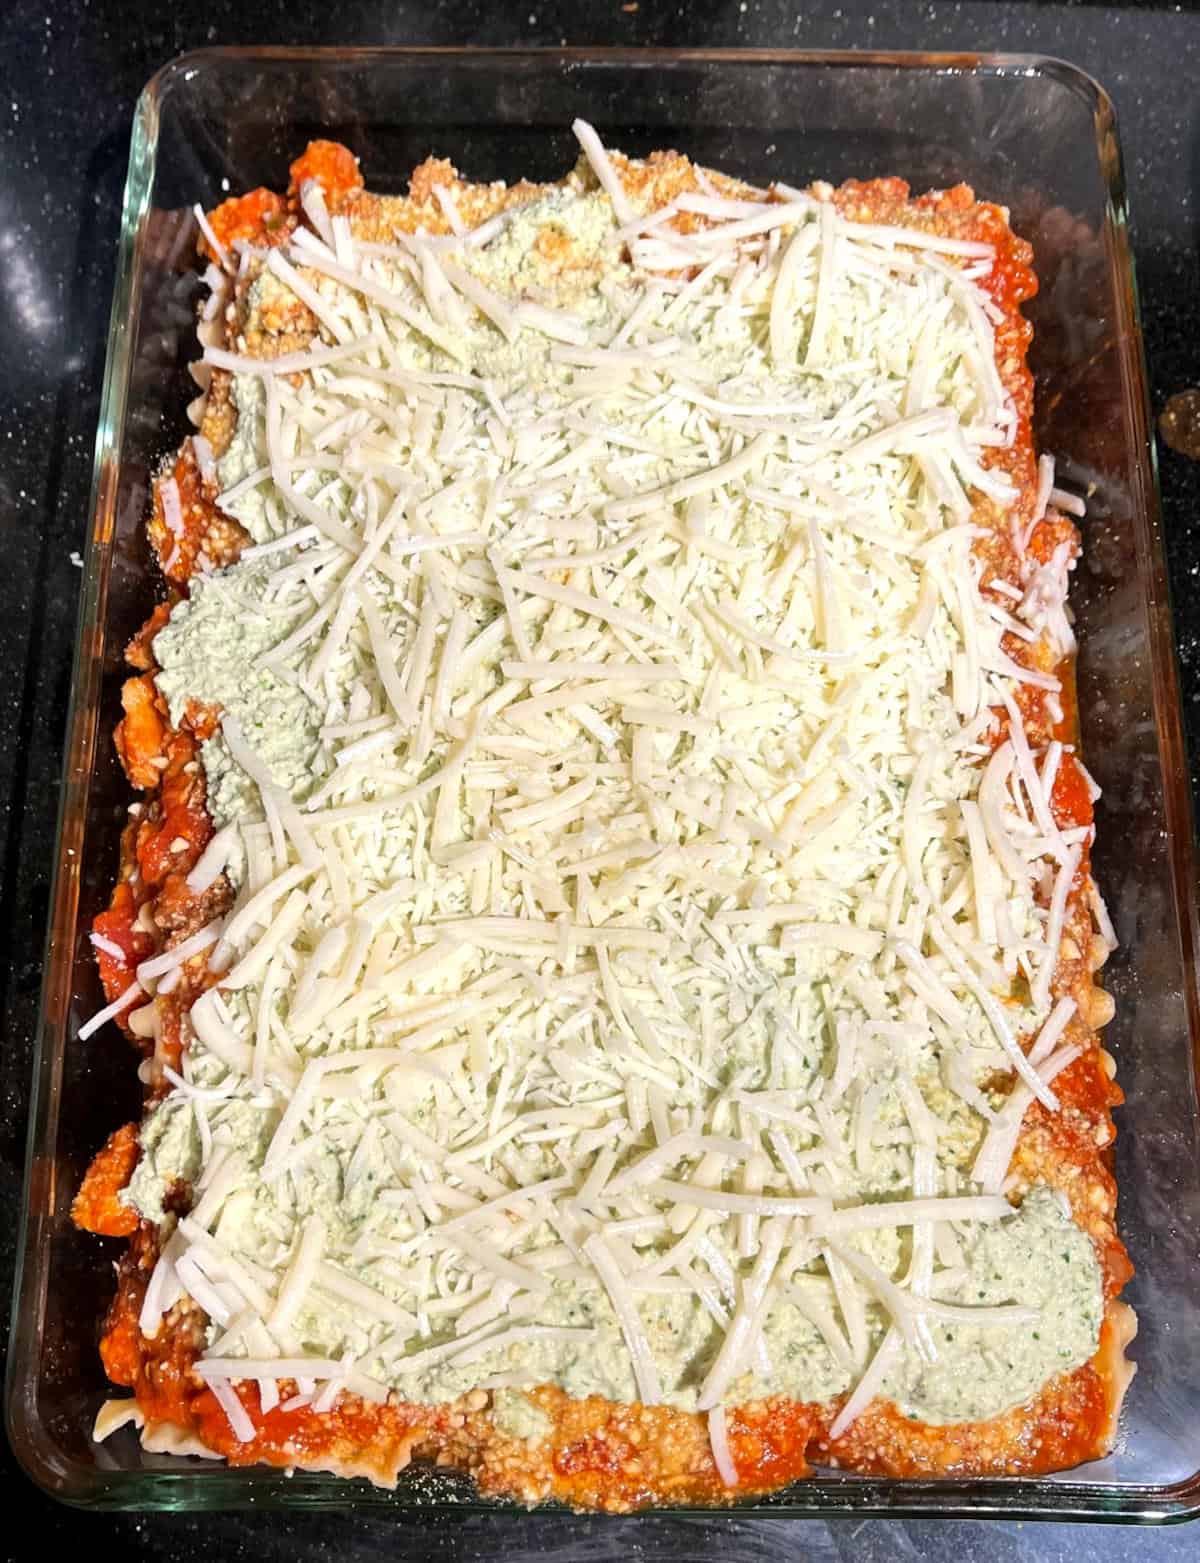 Final layered vegan lasagna